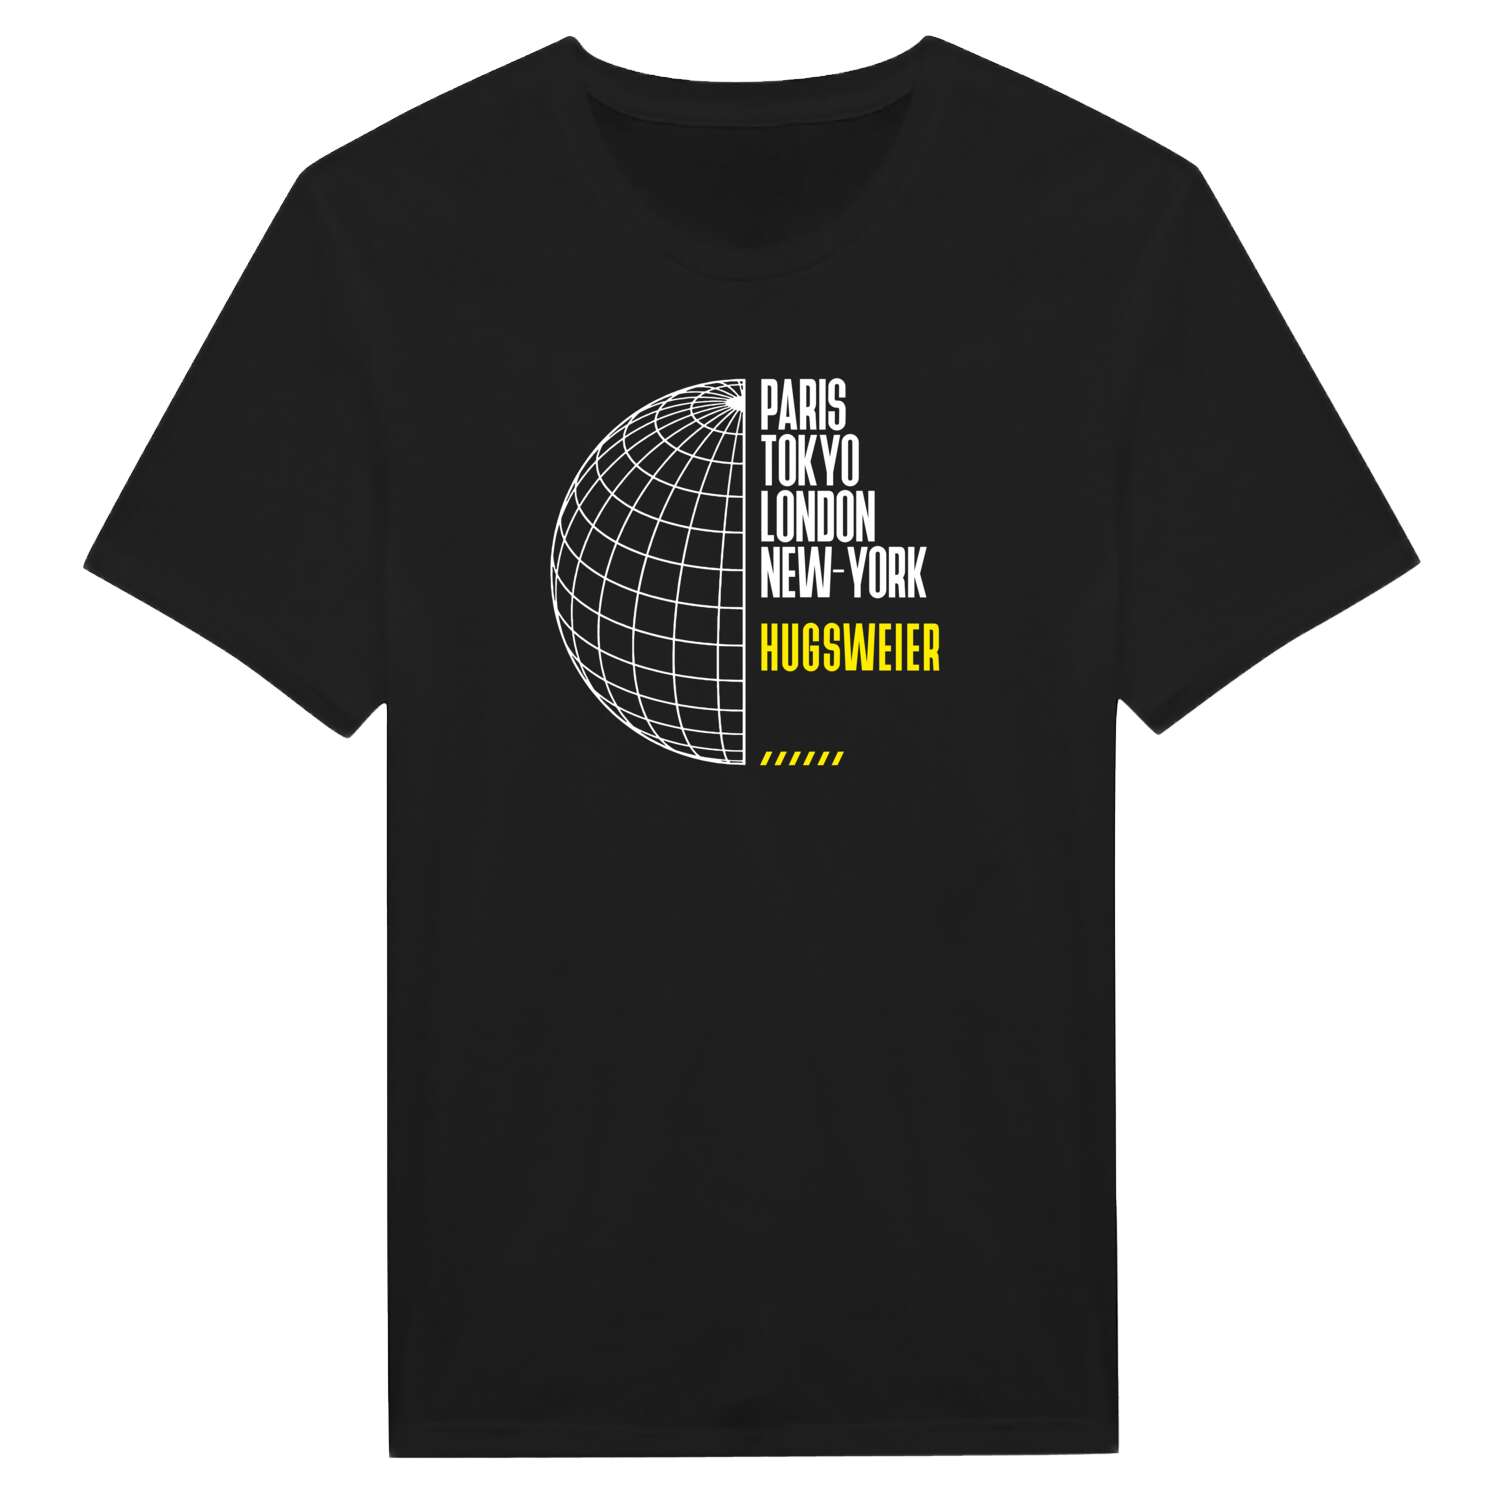 Hugsweier T-Shirt »Paris Tokyo London«